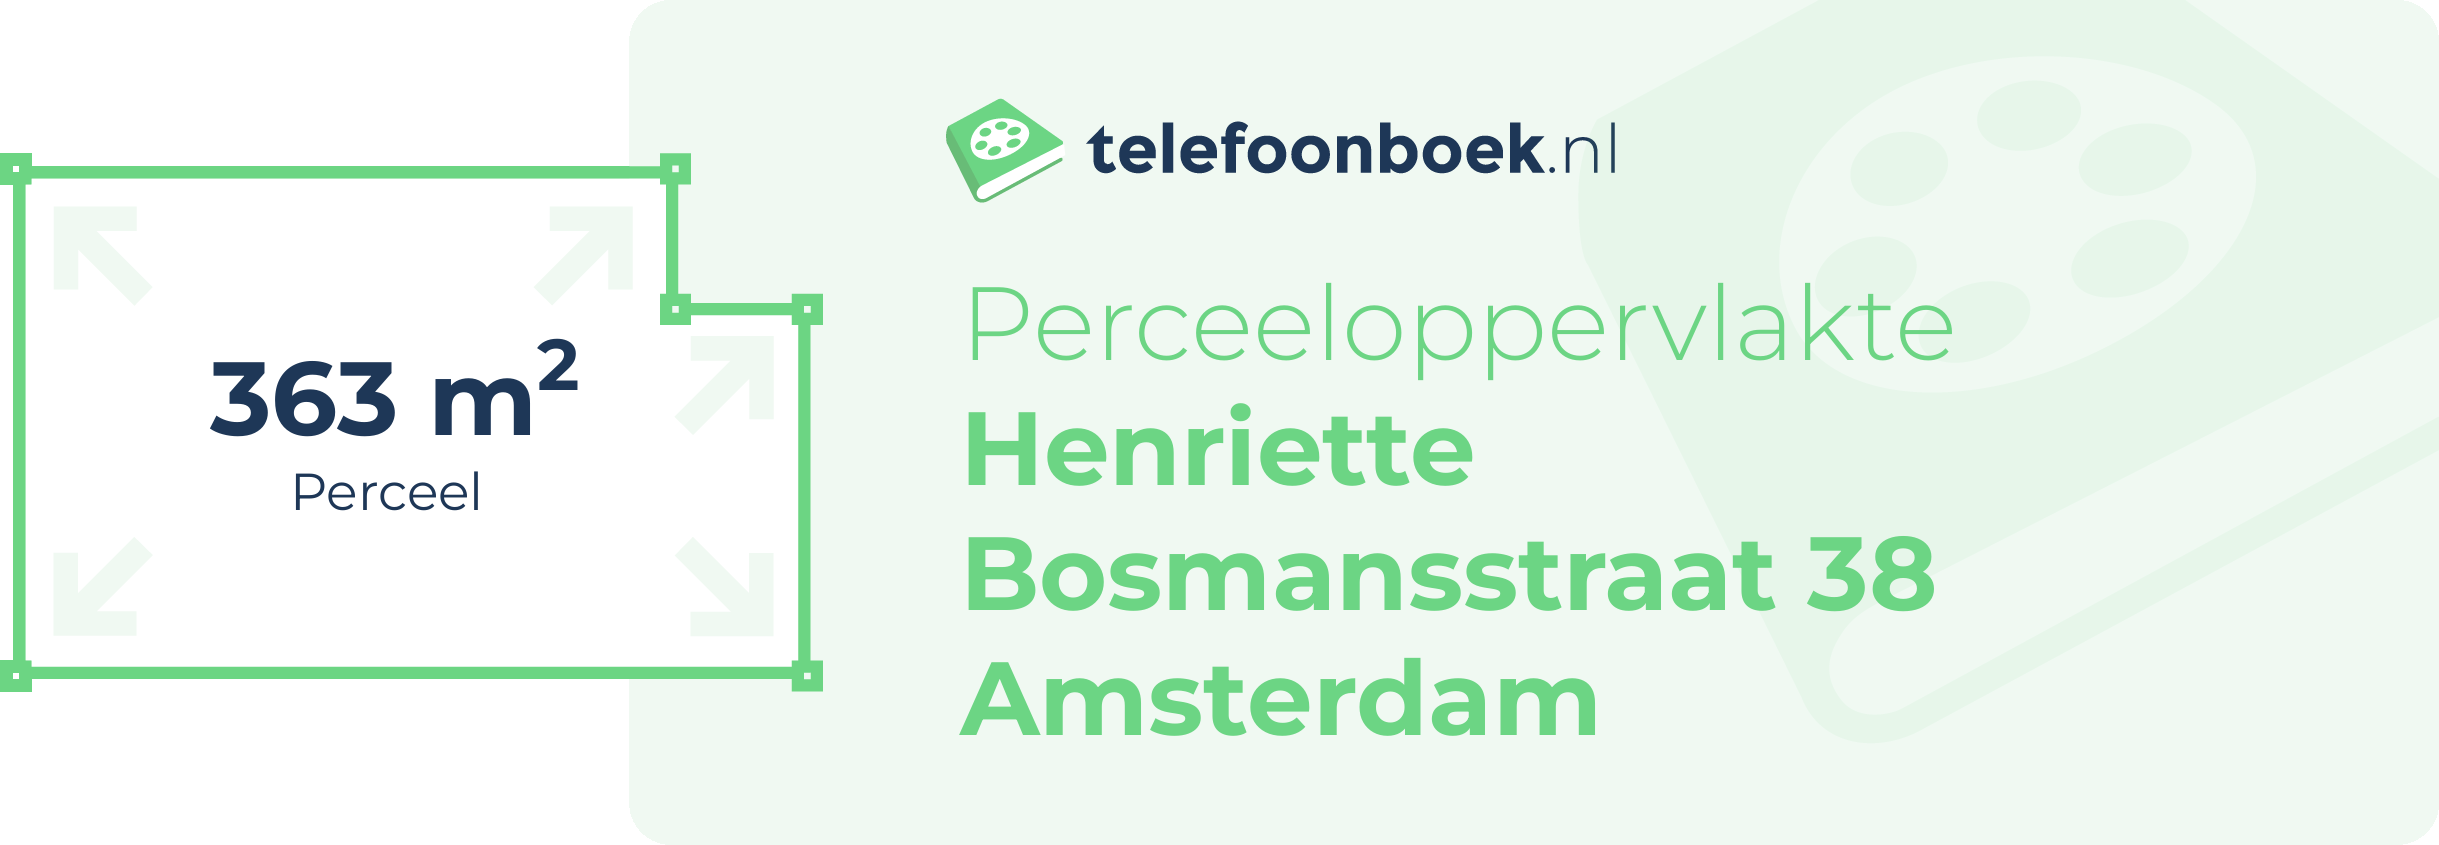 Perceeloppervlakte Henriette Bosmansstraat 38 Amsterdam